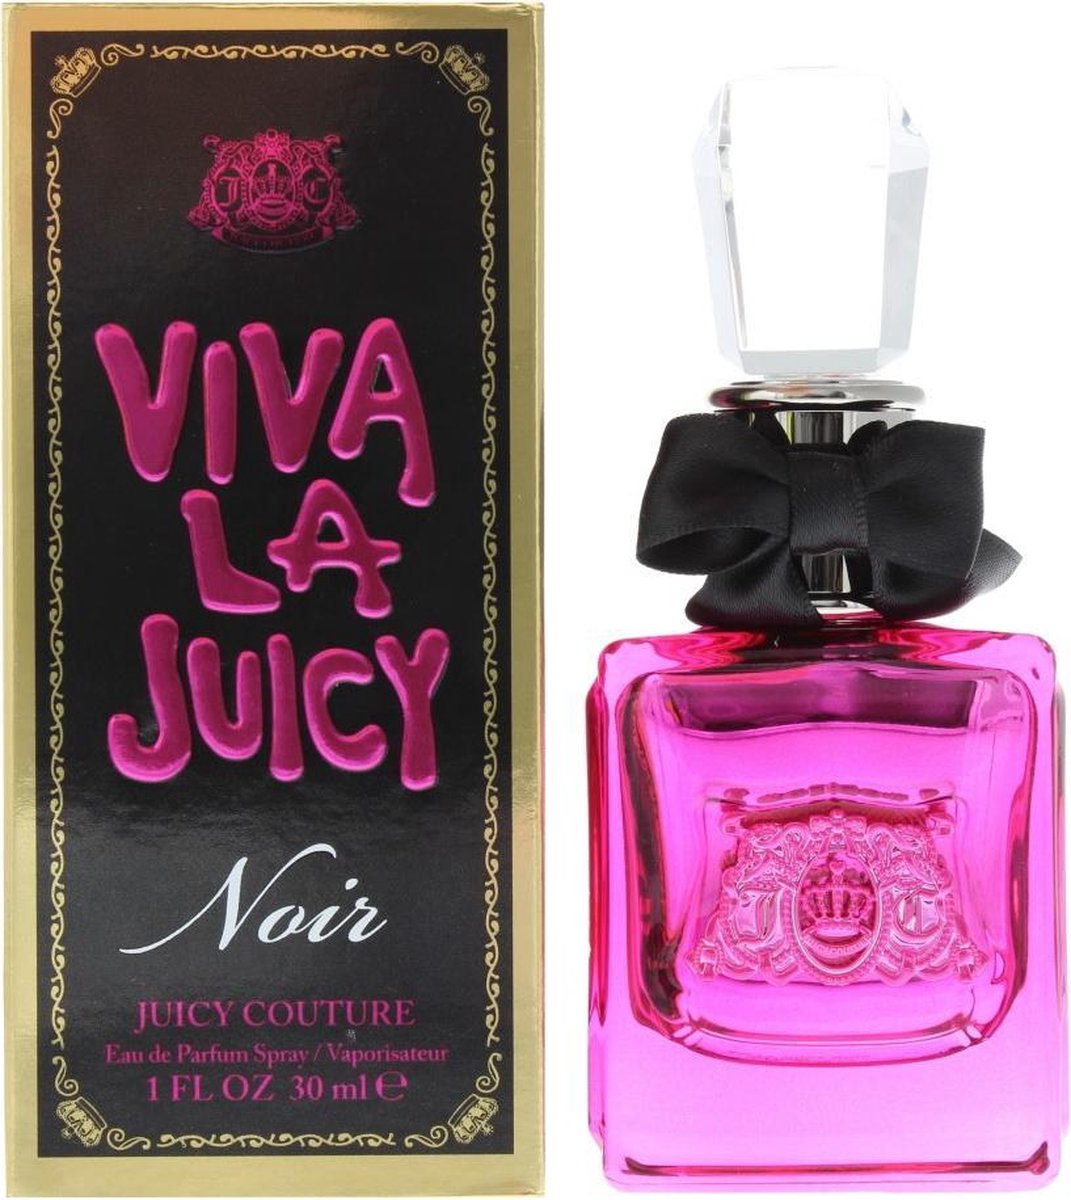 Juicy Couture Viva La Juicy Noir - 30ml - Eau de parfum